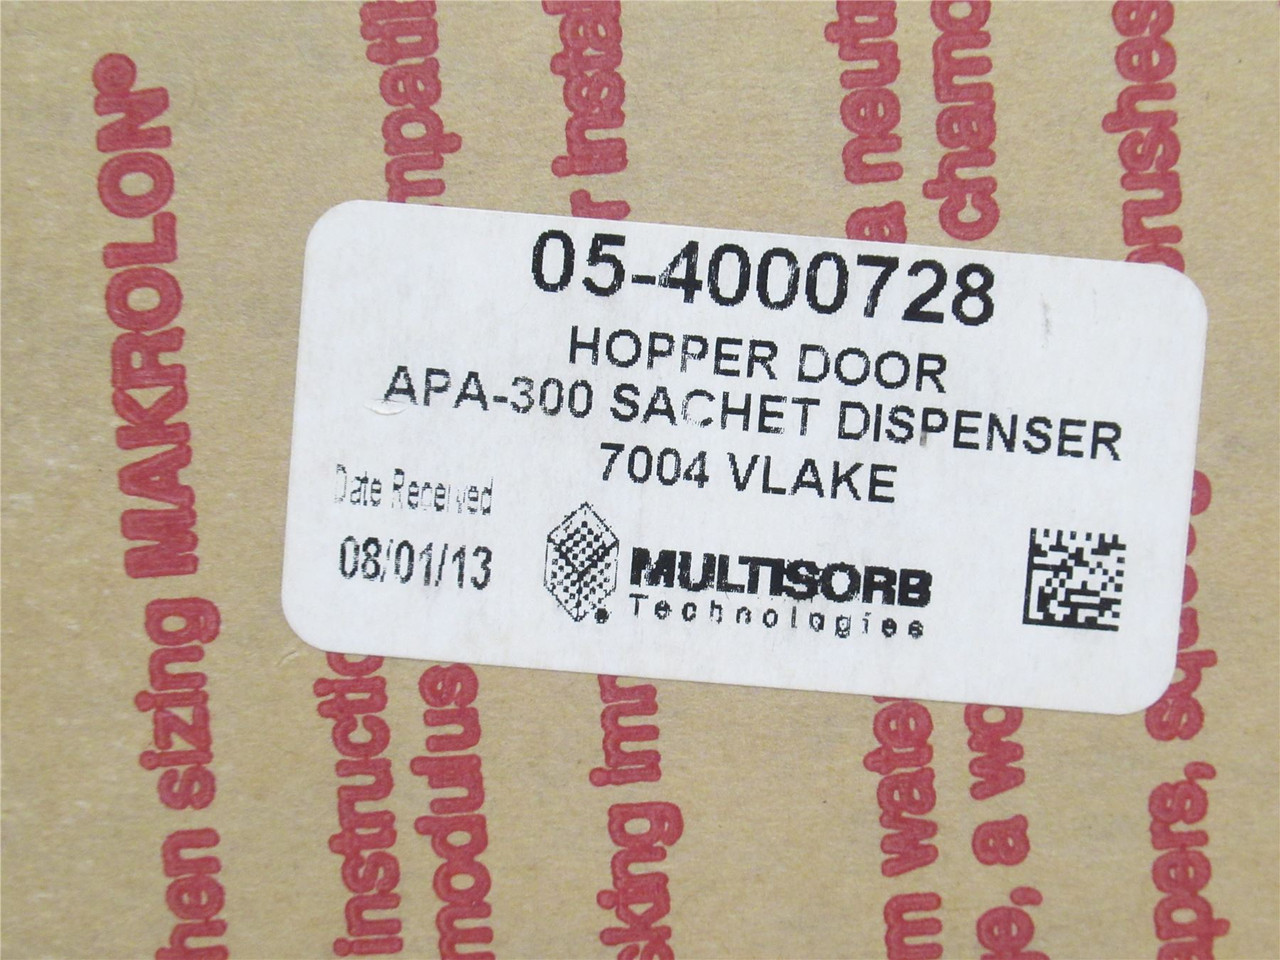 Multisorb Tech 05-4000728; Sachet Dispenser Hopper Door